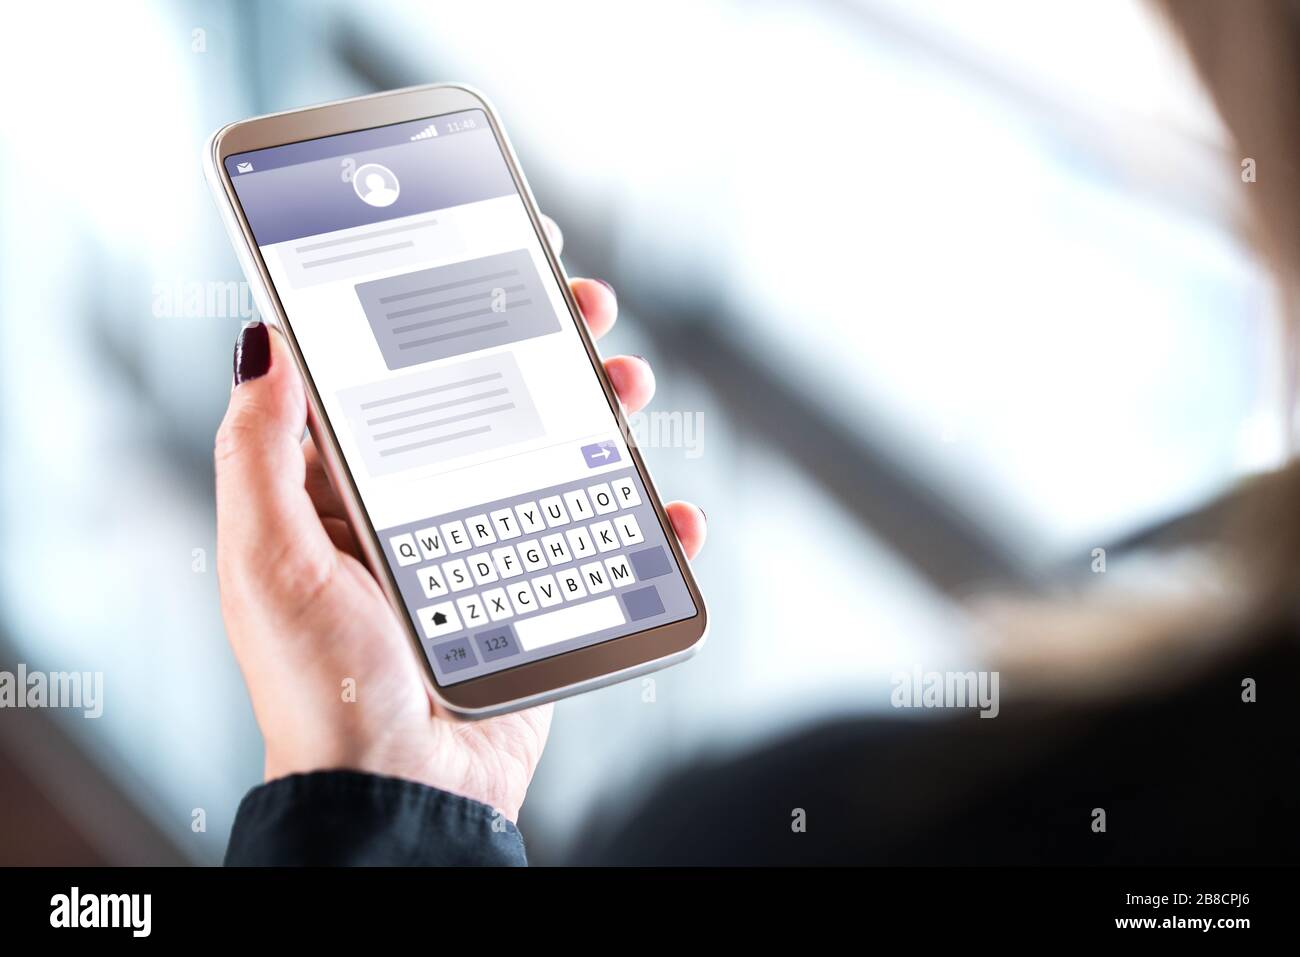 Frau, die SMS mit dem Handy sendet. Handy in der Hand mit sms-Anwendung auf dem Bildschirm. Person, die Instant Messaging-Software verwendet. Stockfoto